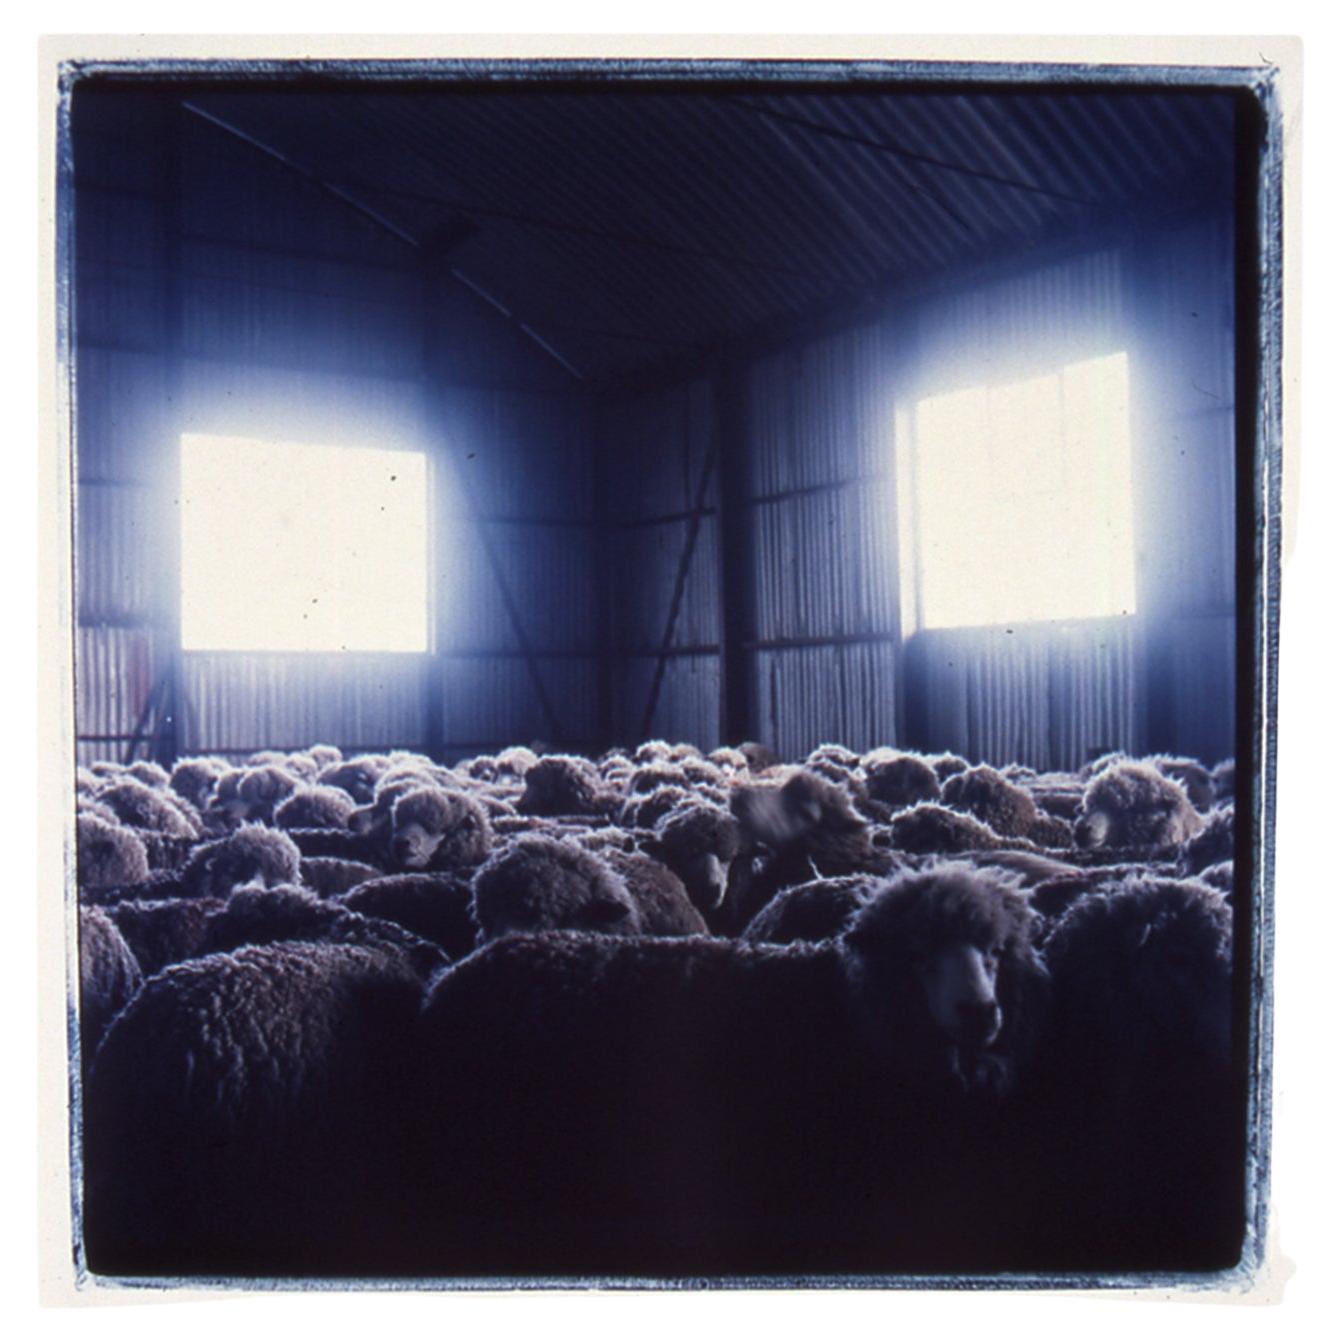 Sheep Photograph by Michael Stuetz